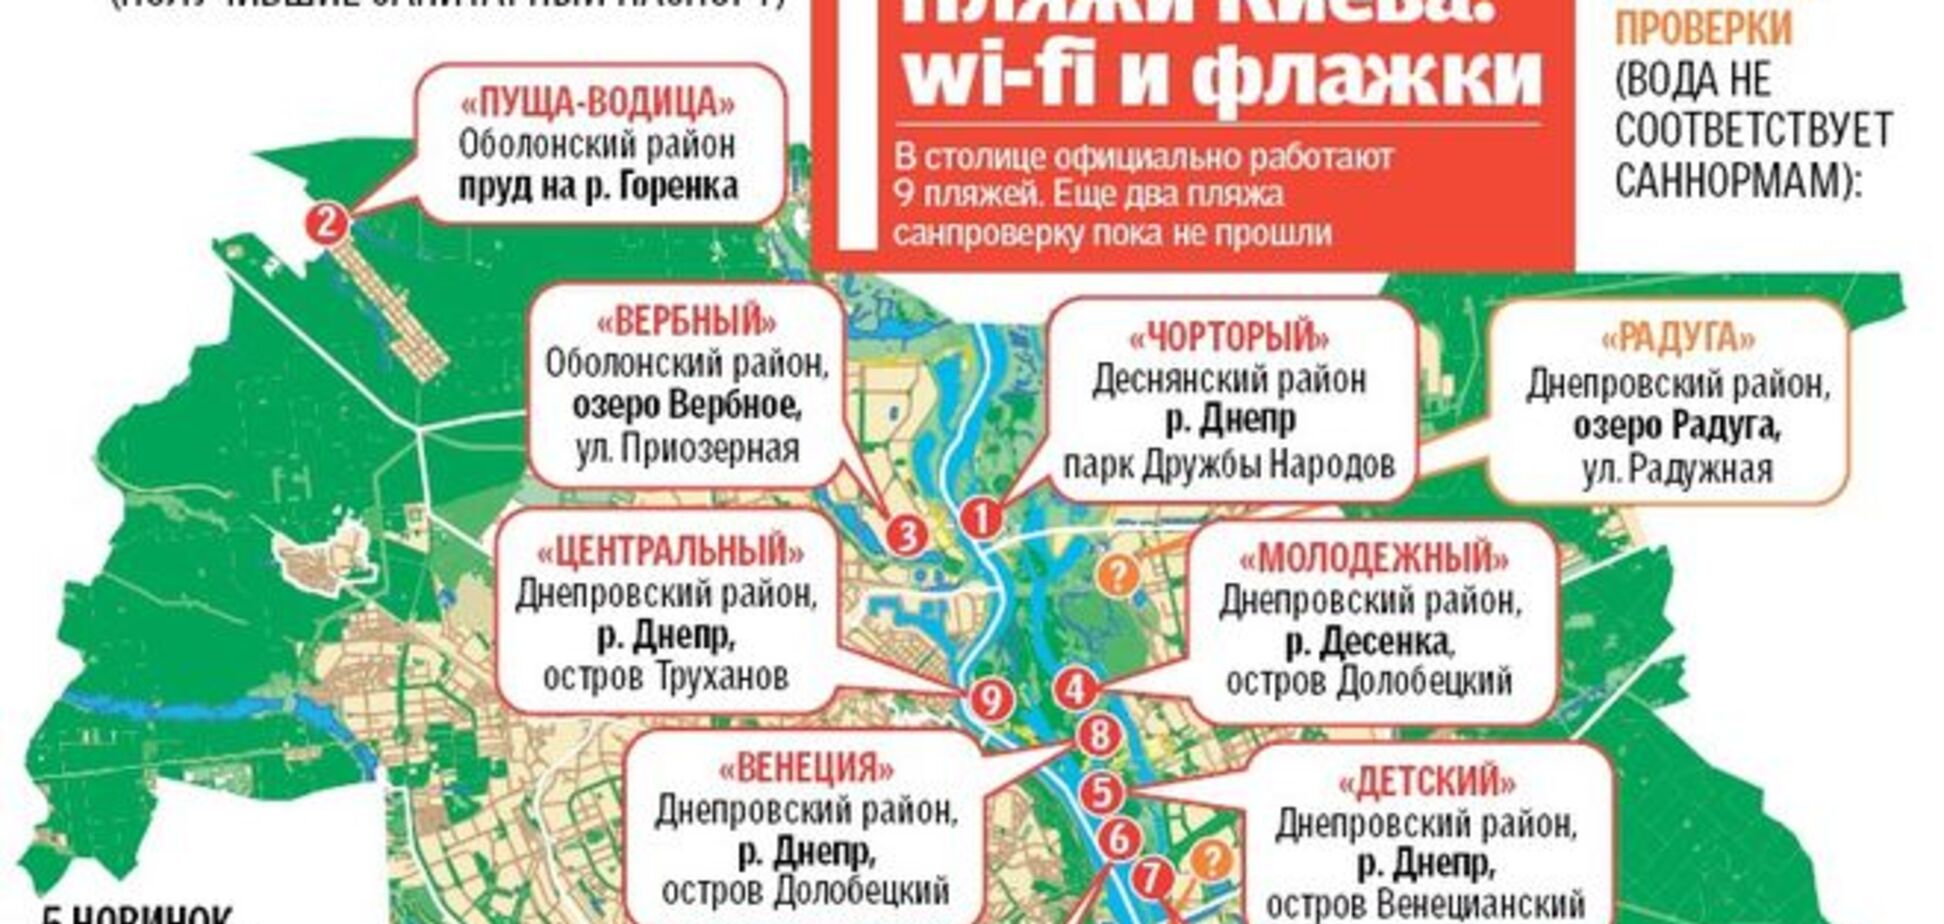 В Киеве официально открылись 9 пляжей: инфографика